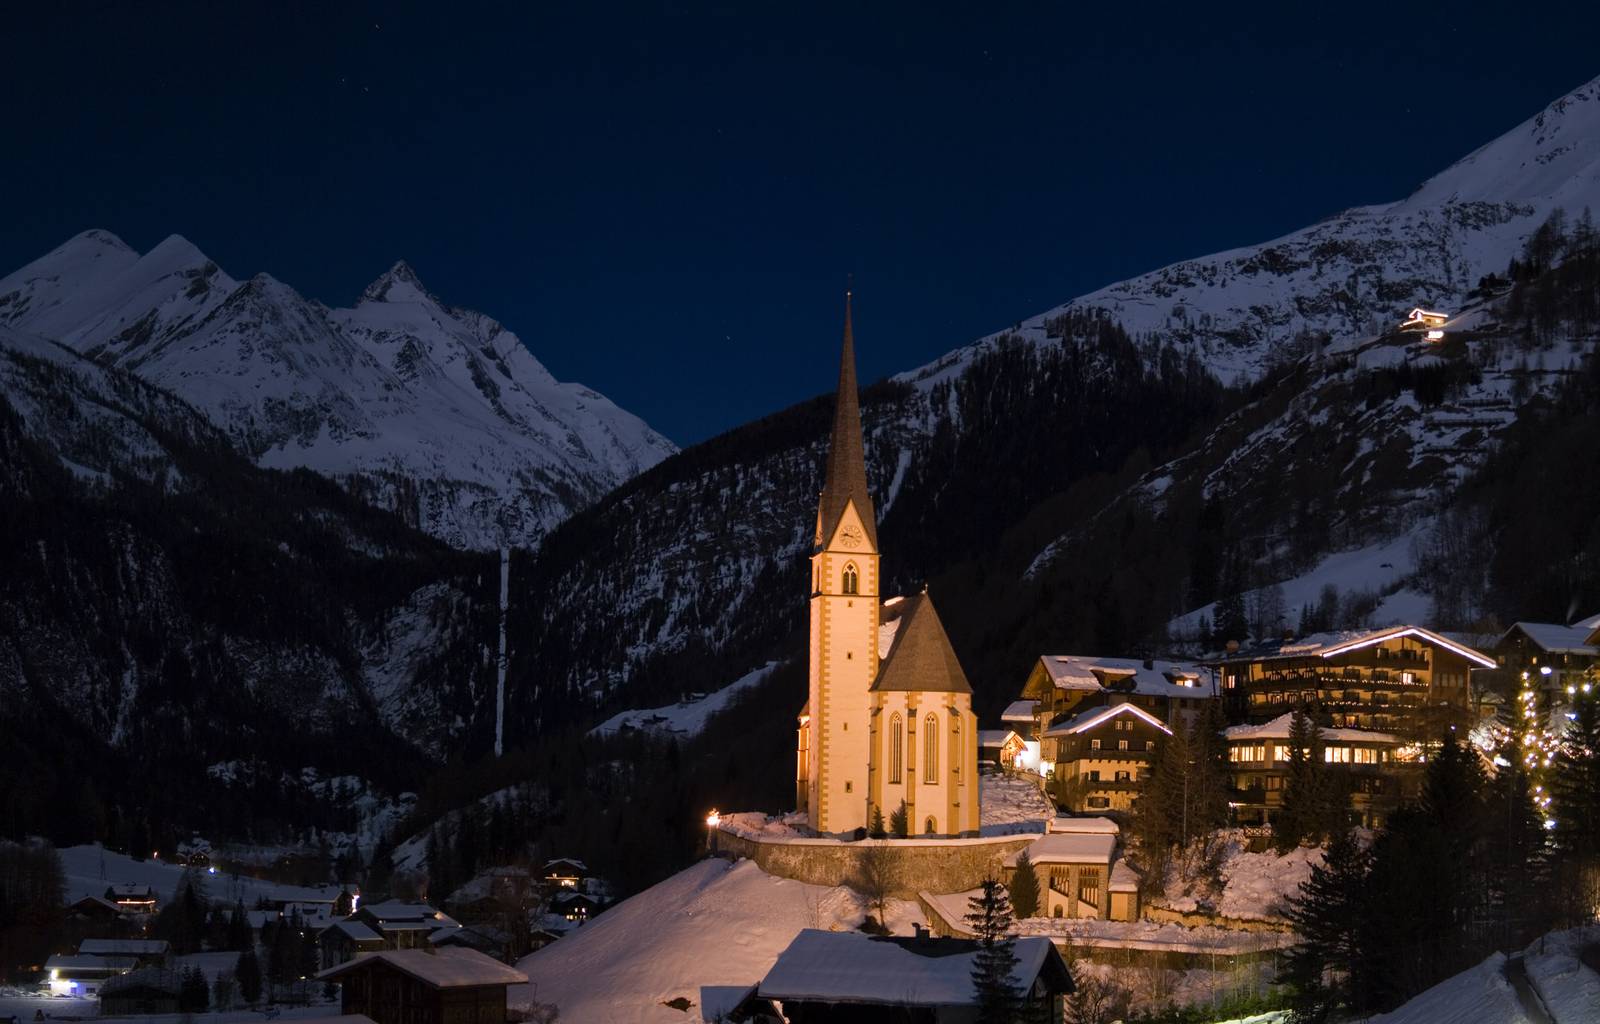 Ein Wintermärchen wartet in Heiligenblut. Wild, mystisch und heimelig. Hoch oben thront der höchste Berg Österreichs, der Großglockner.